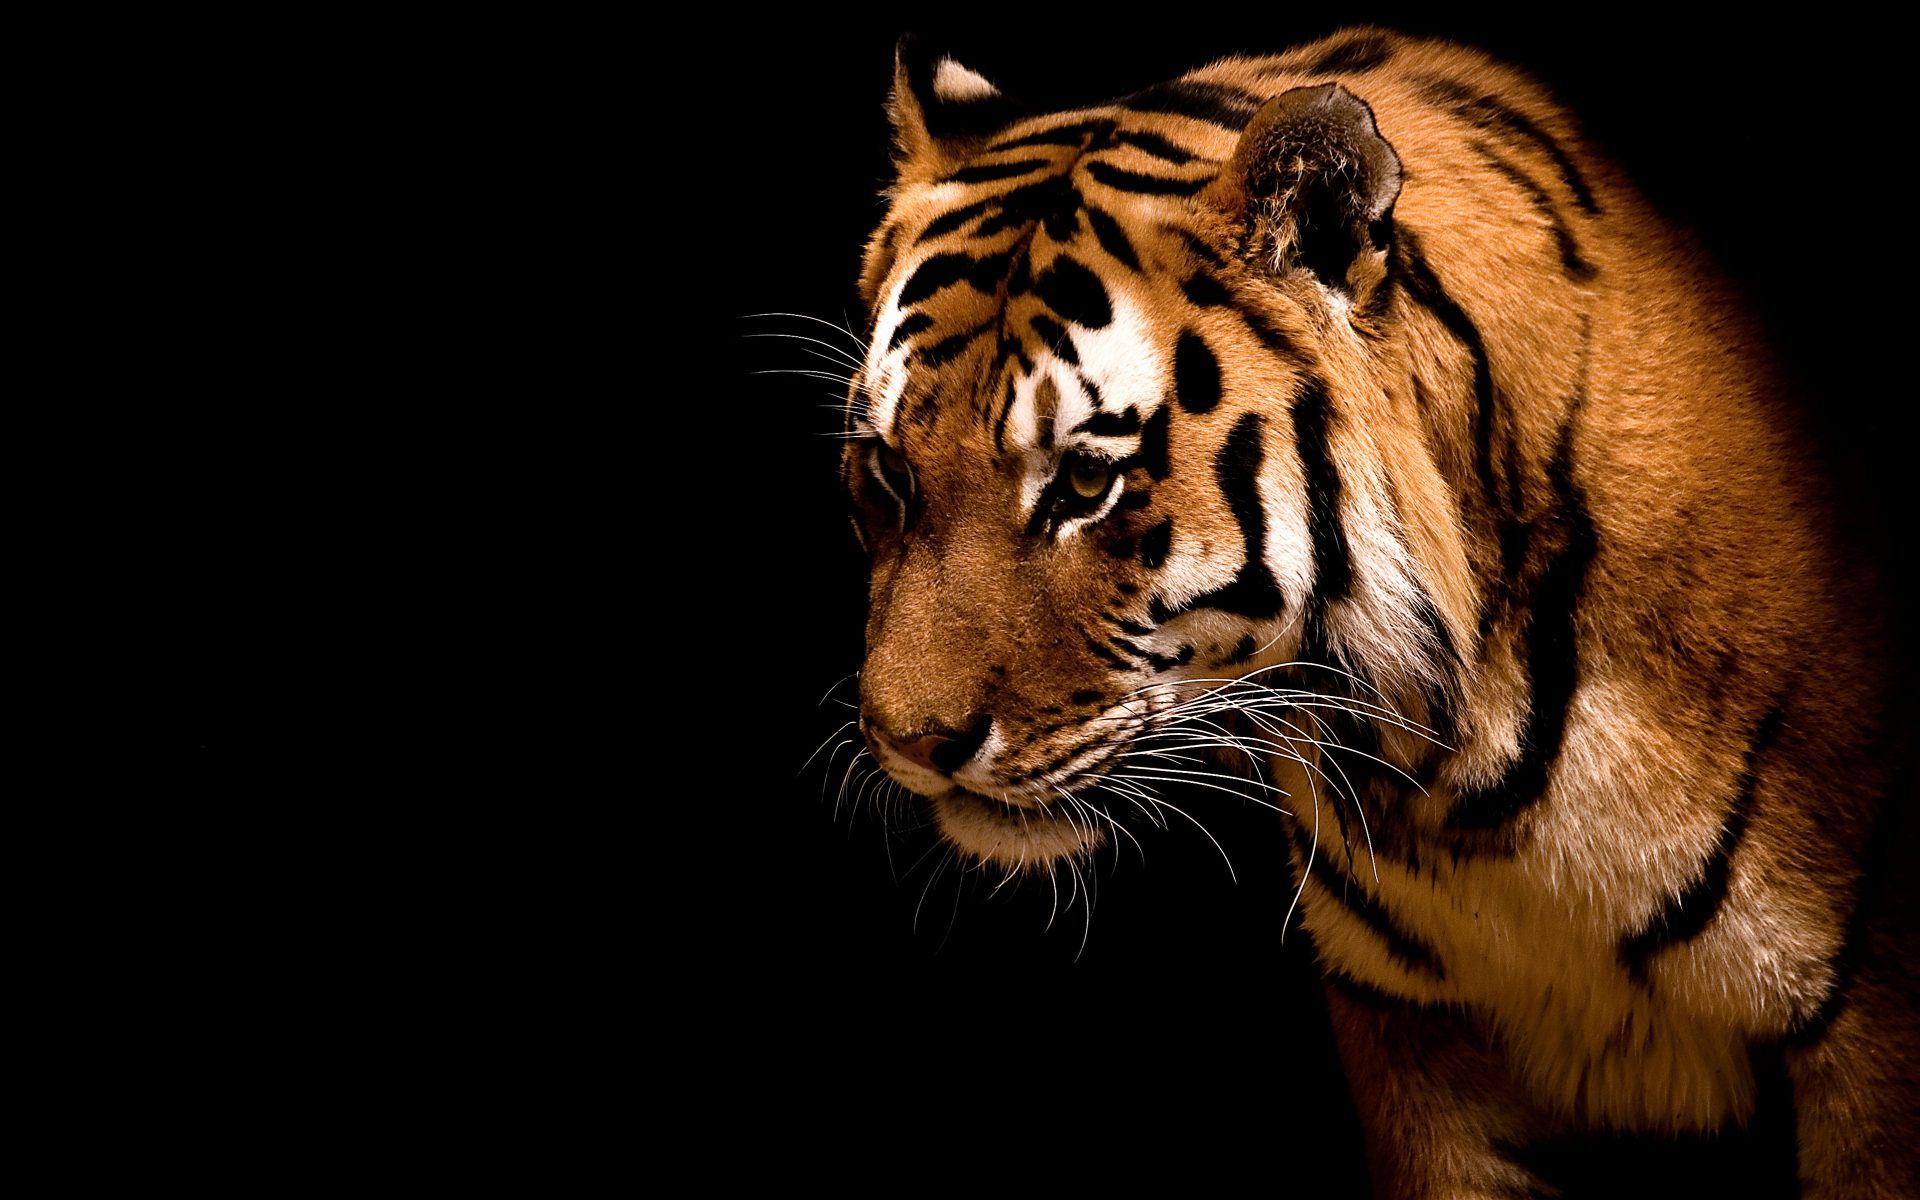 Tiger Black Background wallpaper 17641